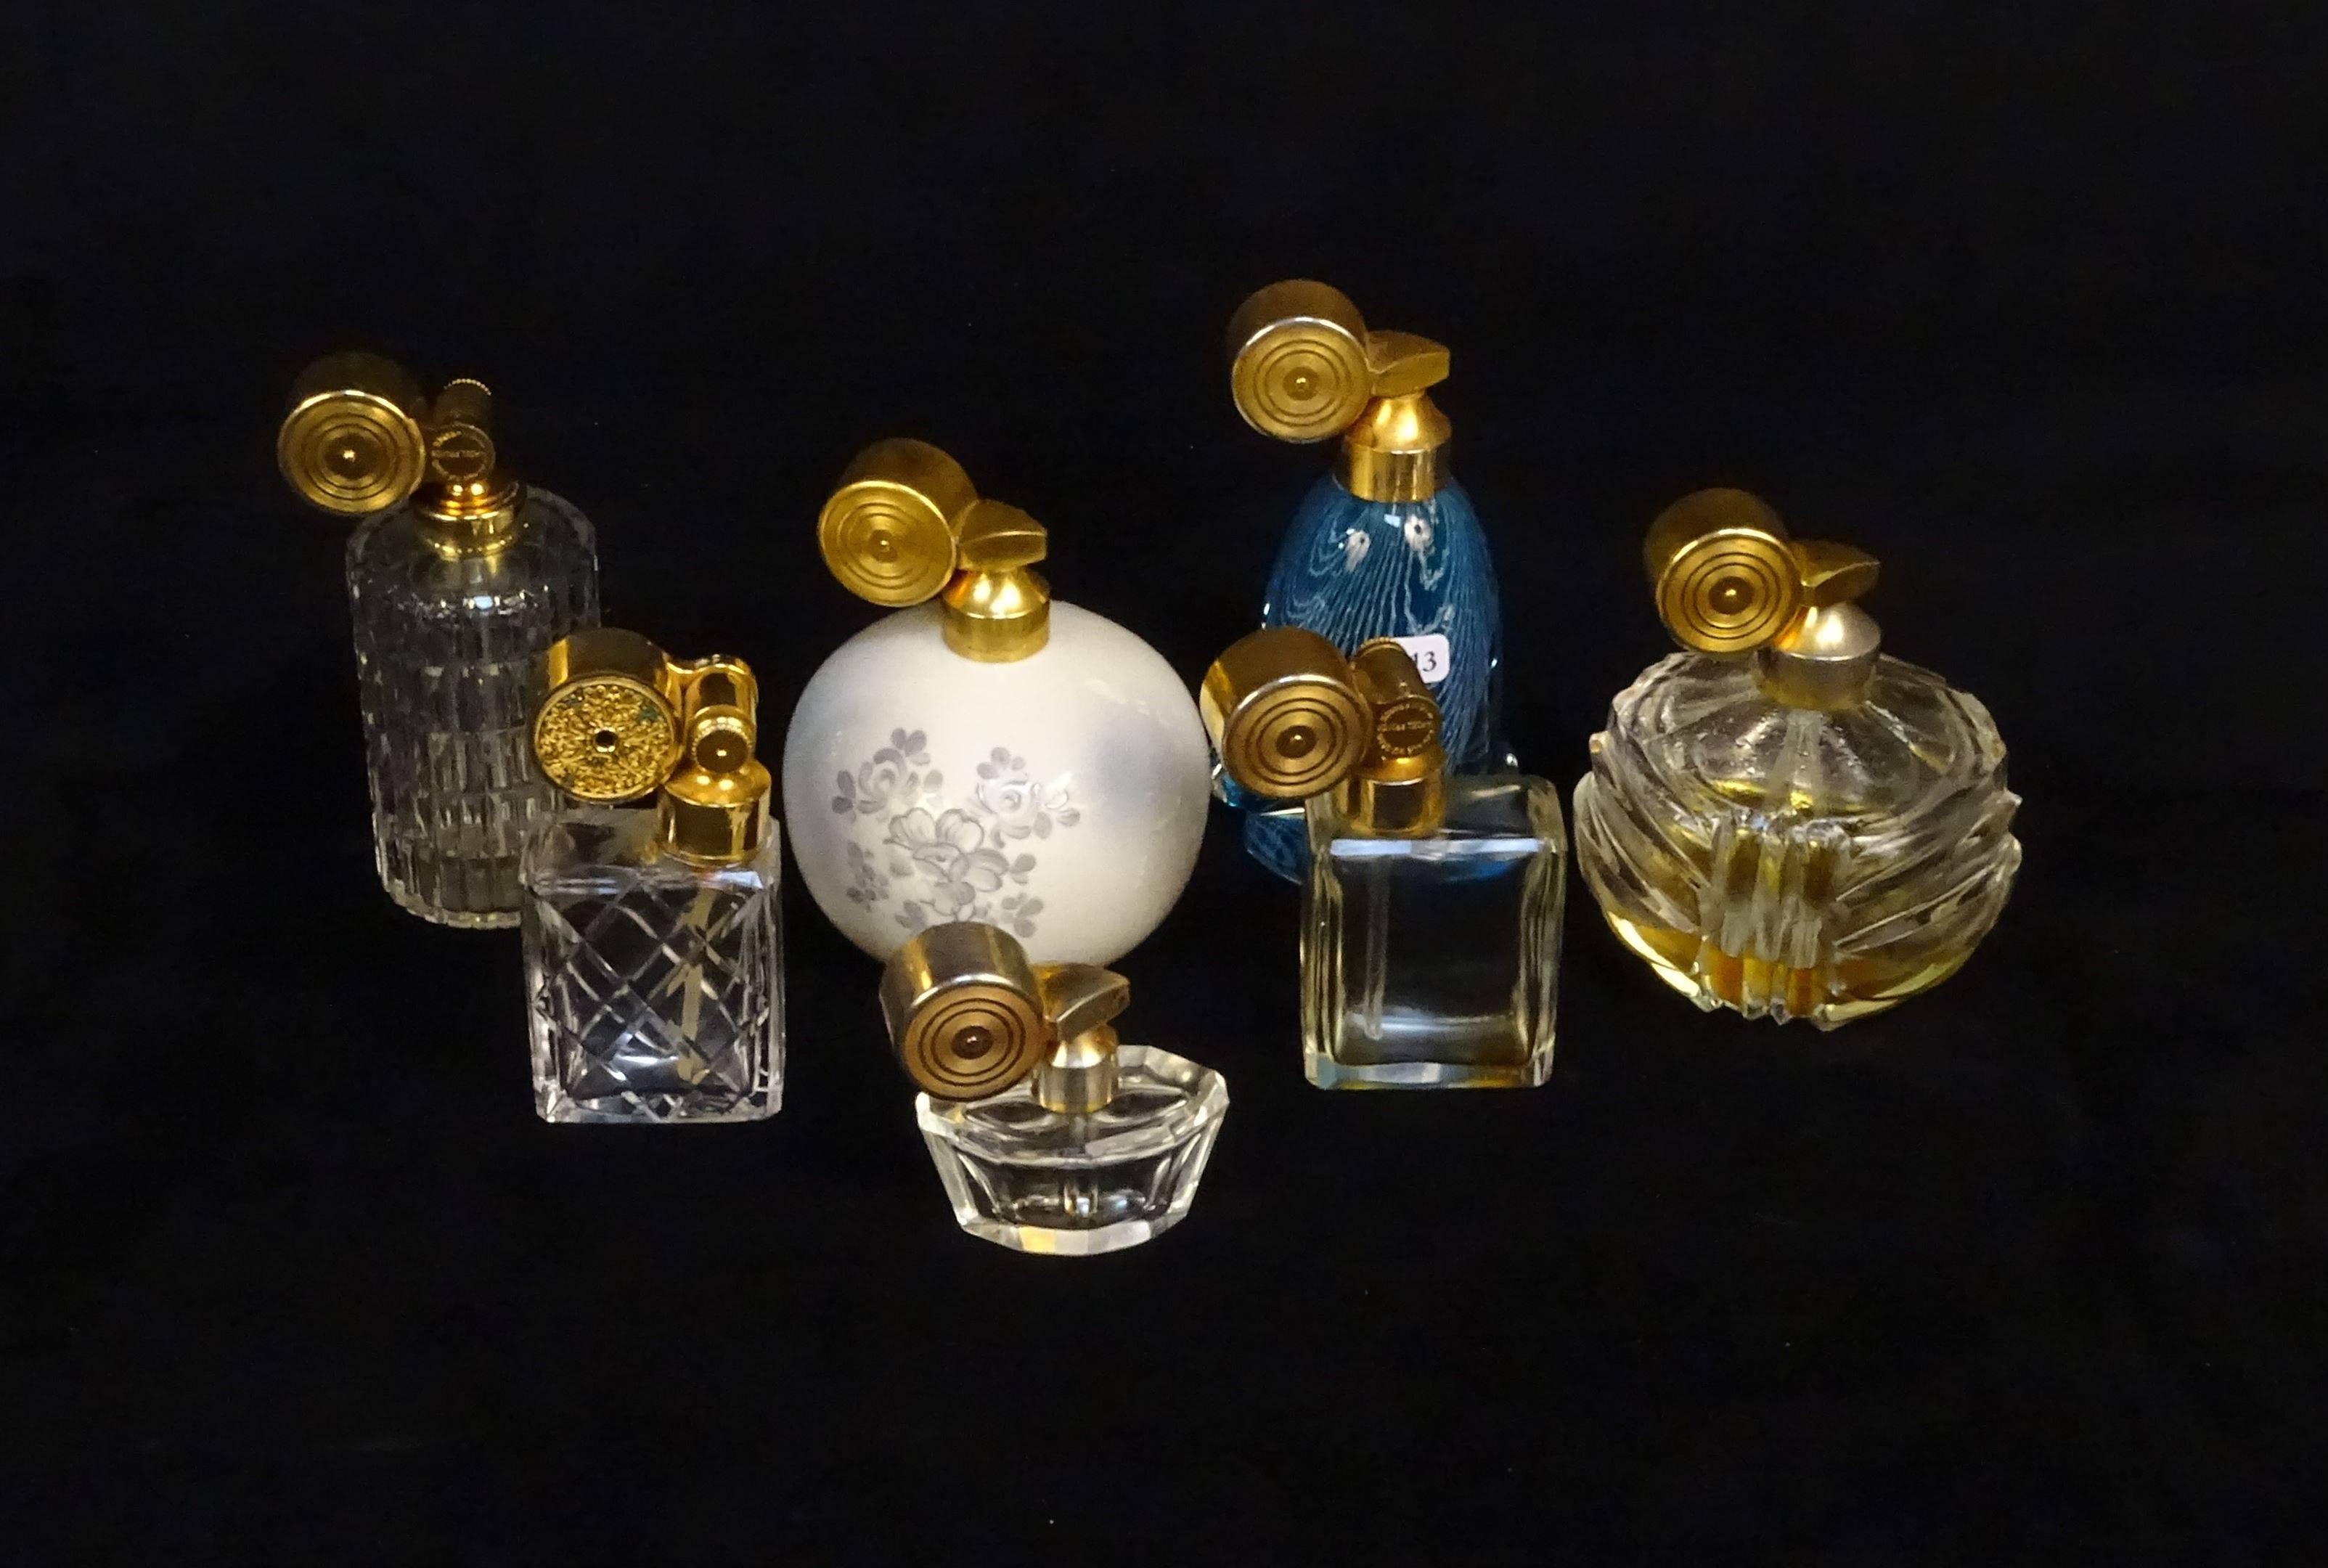 MARCEL FRANCK - Série de 7 flacons vaporisateurs en cristal